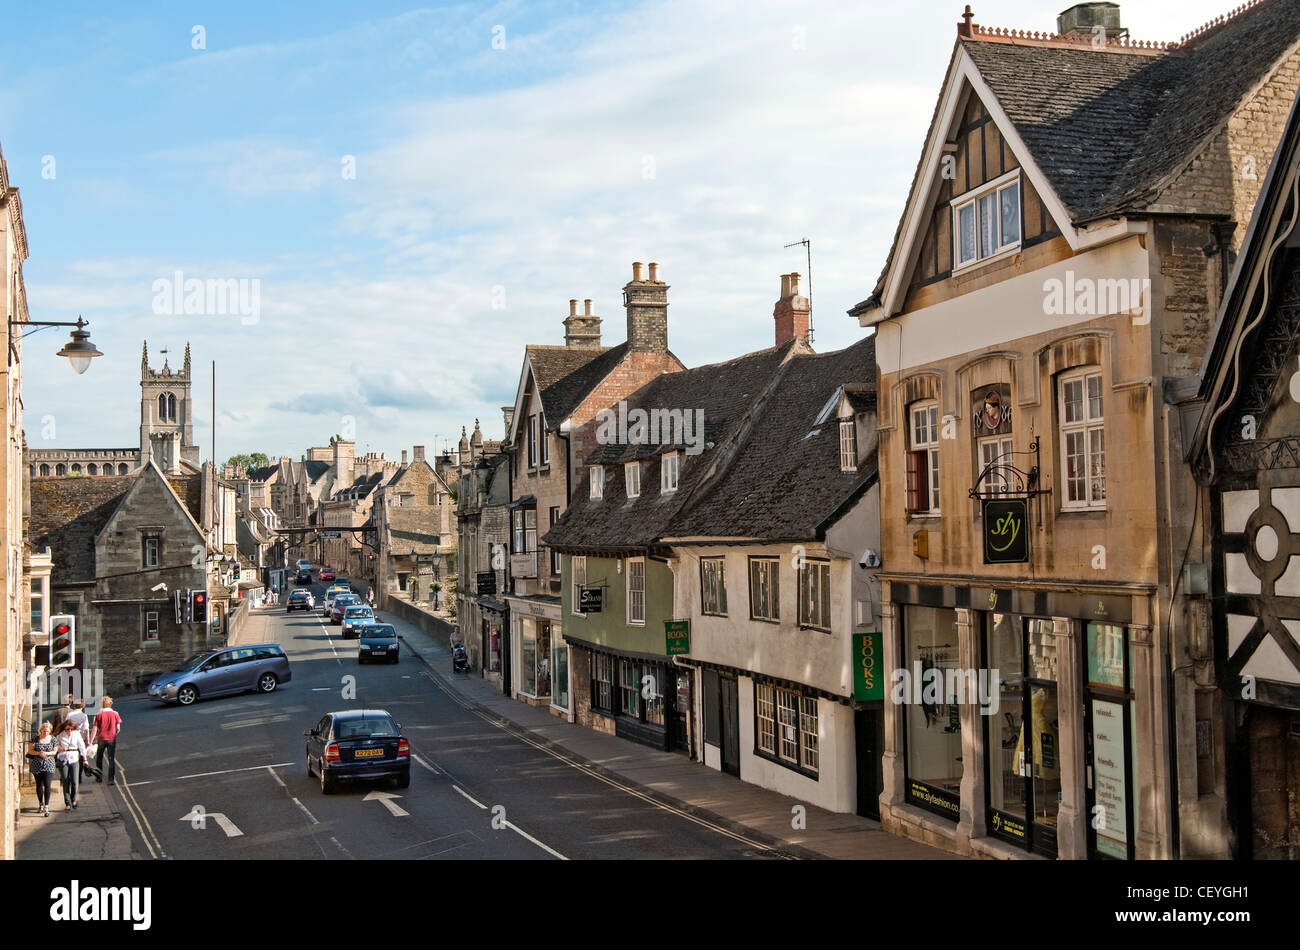 Stamford est une ville ancienne située à environ 100 kilomètres au nord de Londres, à l'ancienne grande route du nord menant à York. Banque D'Images